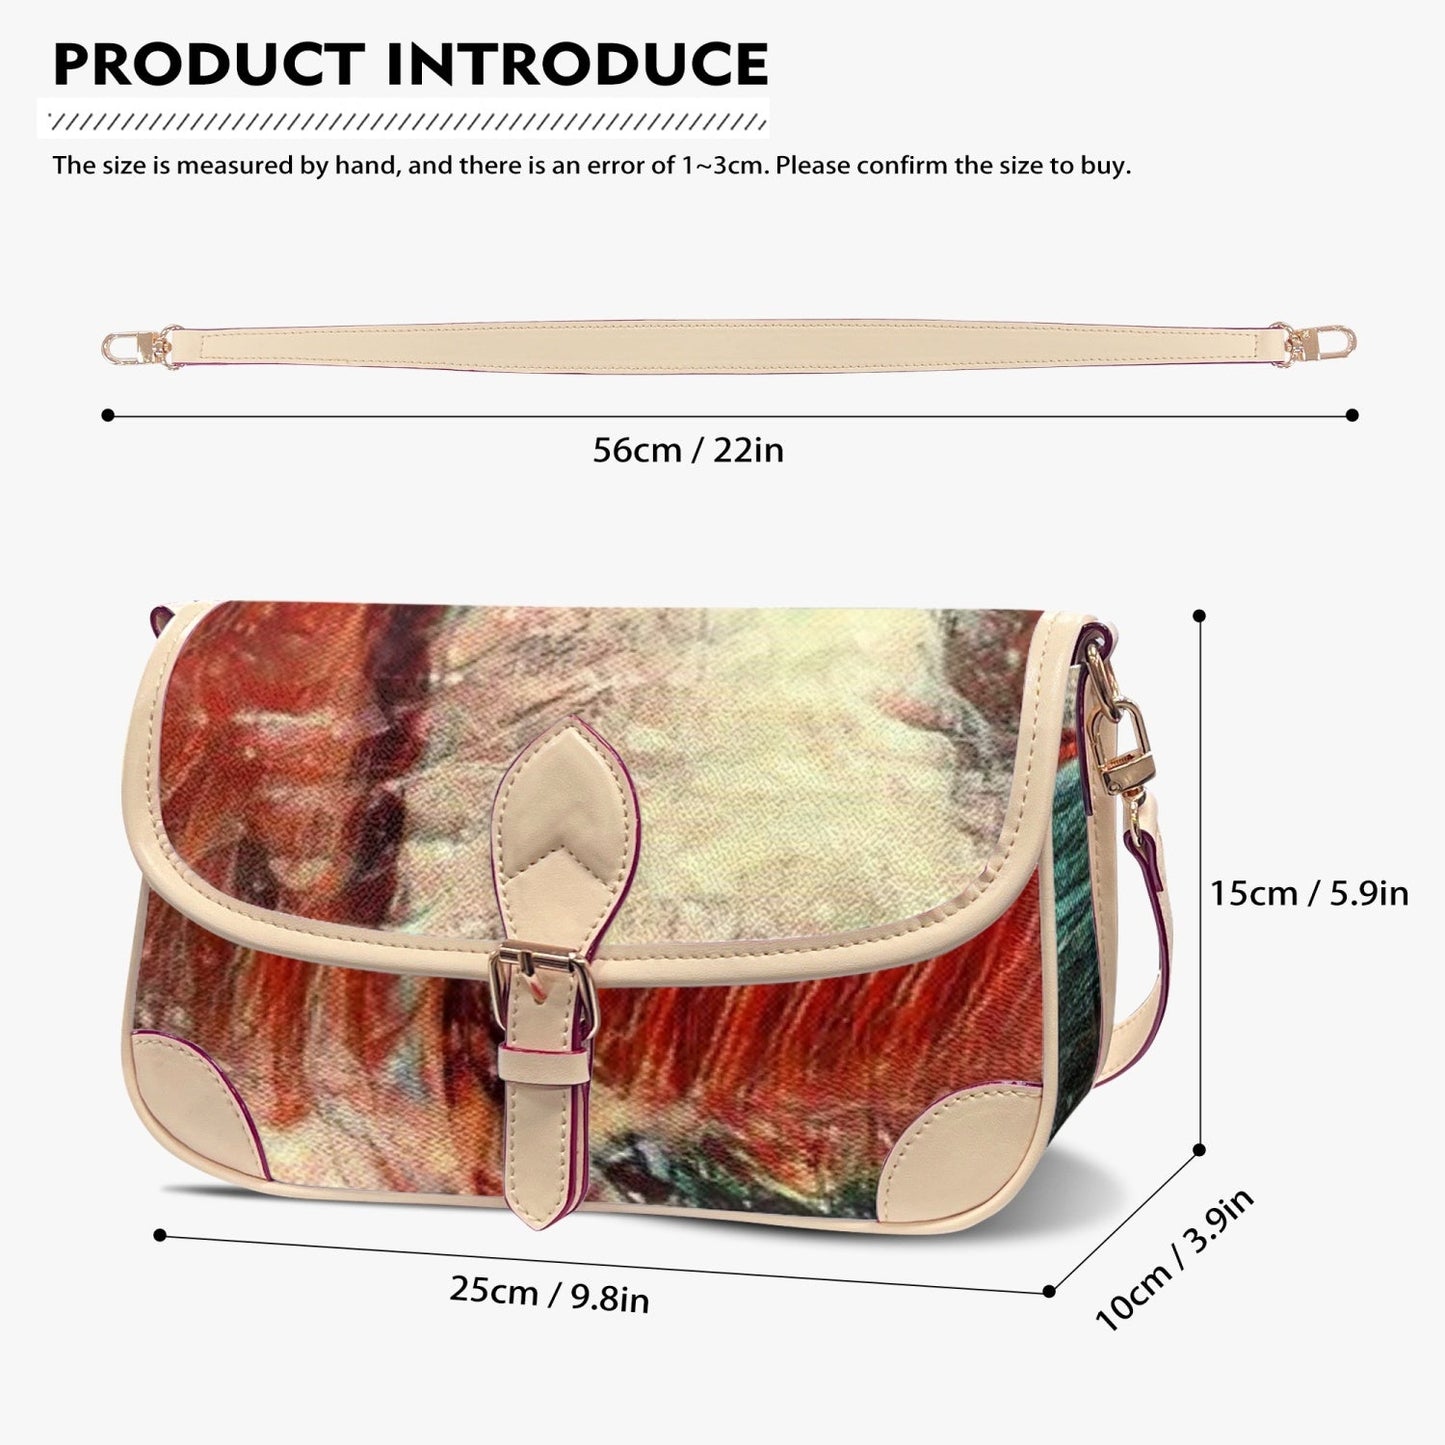 Underarm Bag - Premium bag from Concordia Style Boutique - Just $35.50! Shop now at Concordia Style Boutique